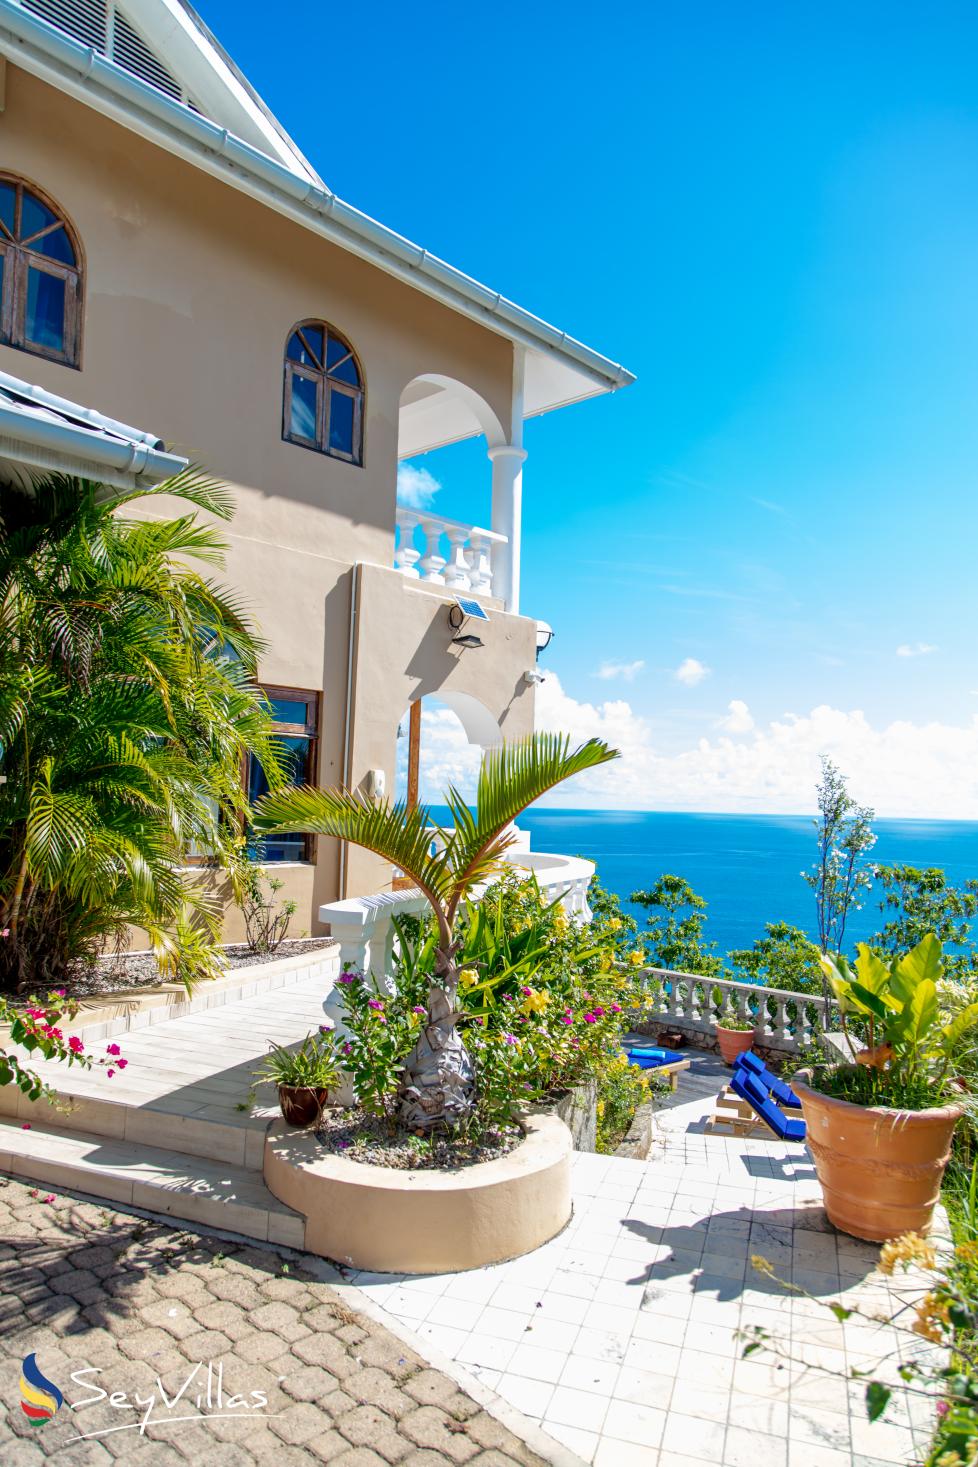 Foto 3: Blu Vista Villa - Aussenbereich - Mahé (Seychellen)